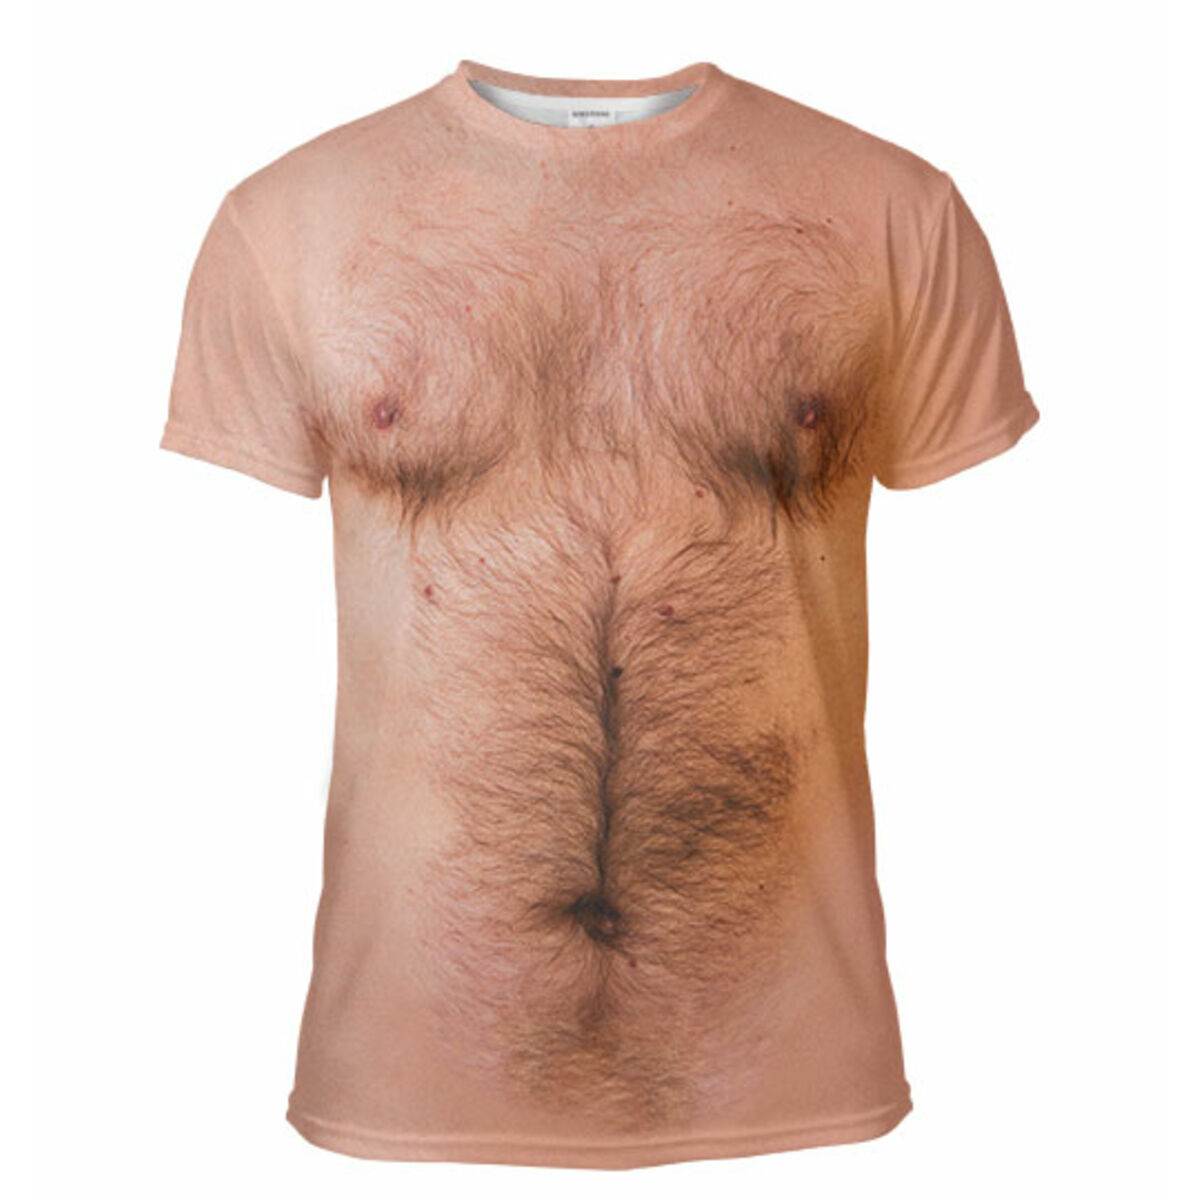 волосатая грудь на футболку фото 3